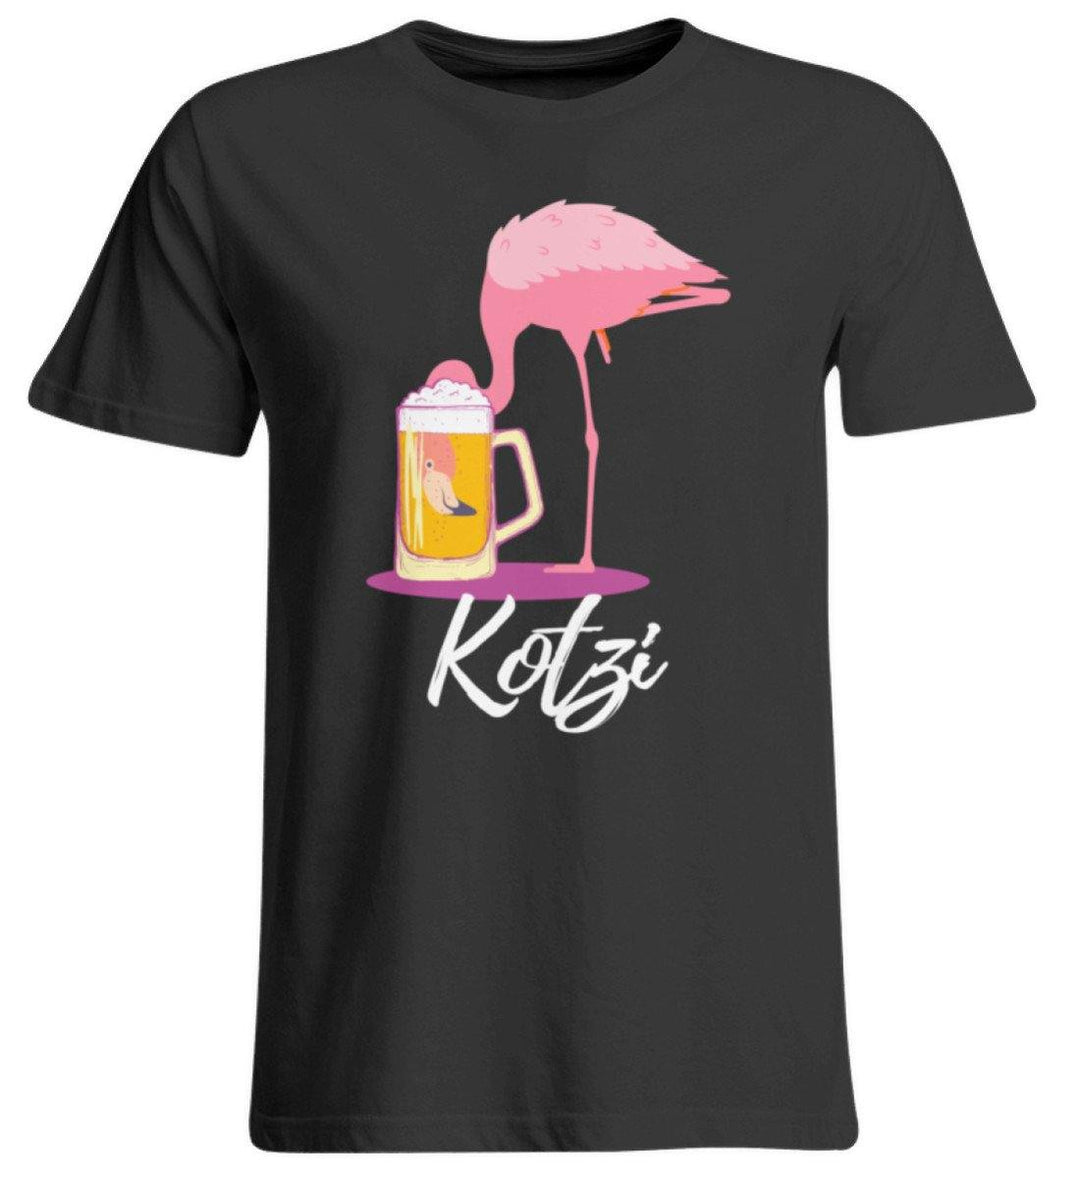 Flamingo Kotzi - Words on Shirt  - Übergrößenshirt - Words on Shirts Sag es mit dem Mittelfinger Shirts Hoodies Sweatshirt Taschen Gymsack Spruch Sprüche Statement